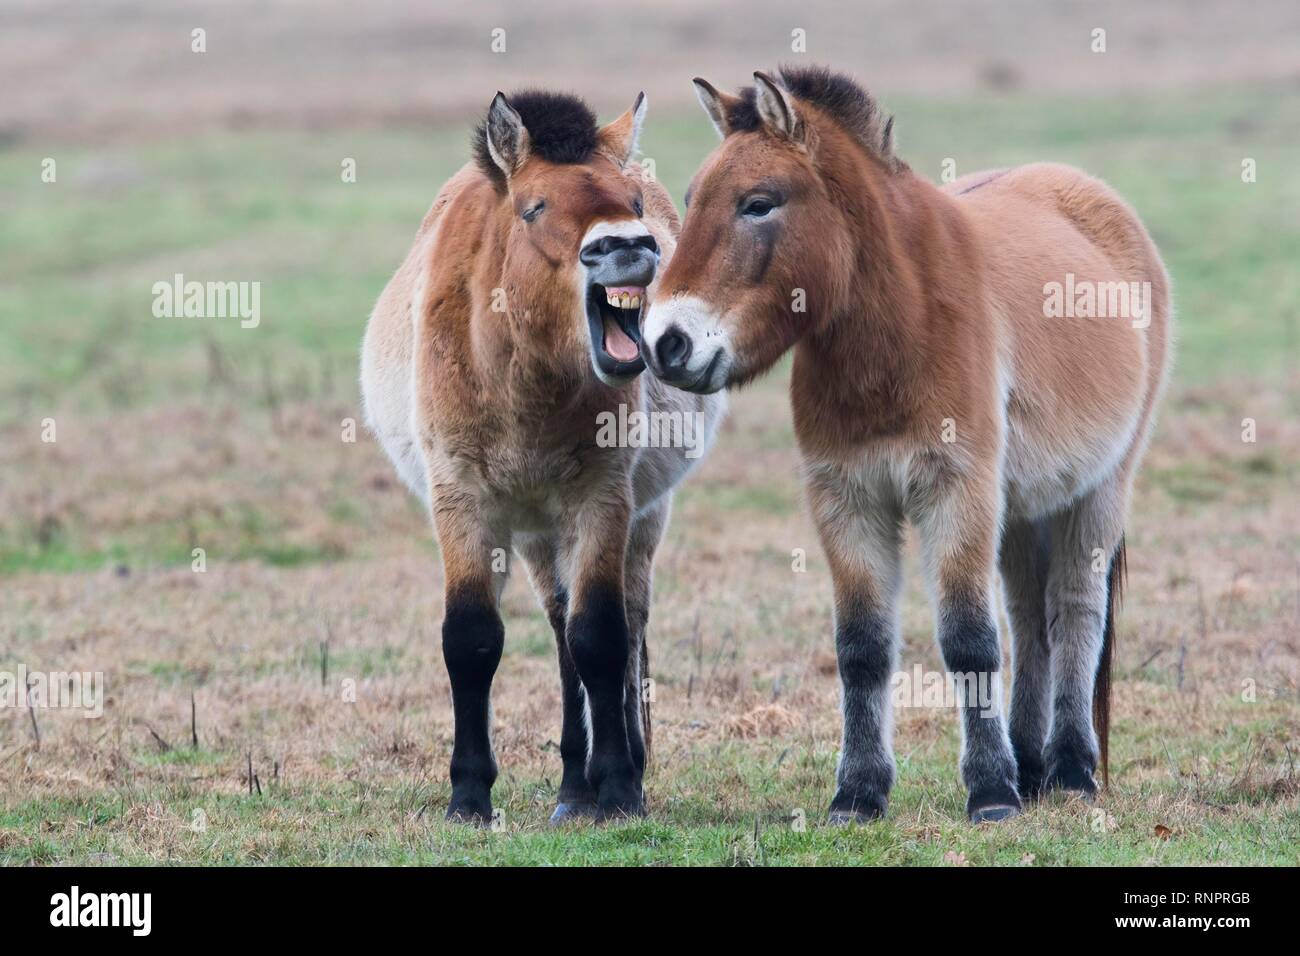 Los caballos de Przewalski (Equus ferus przewalskii), Comunicación, Emsland, Baja Sajonia, Alemania Foto de stock